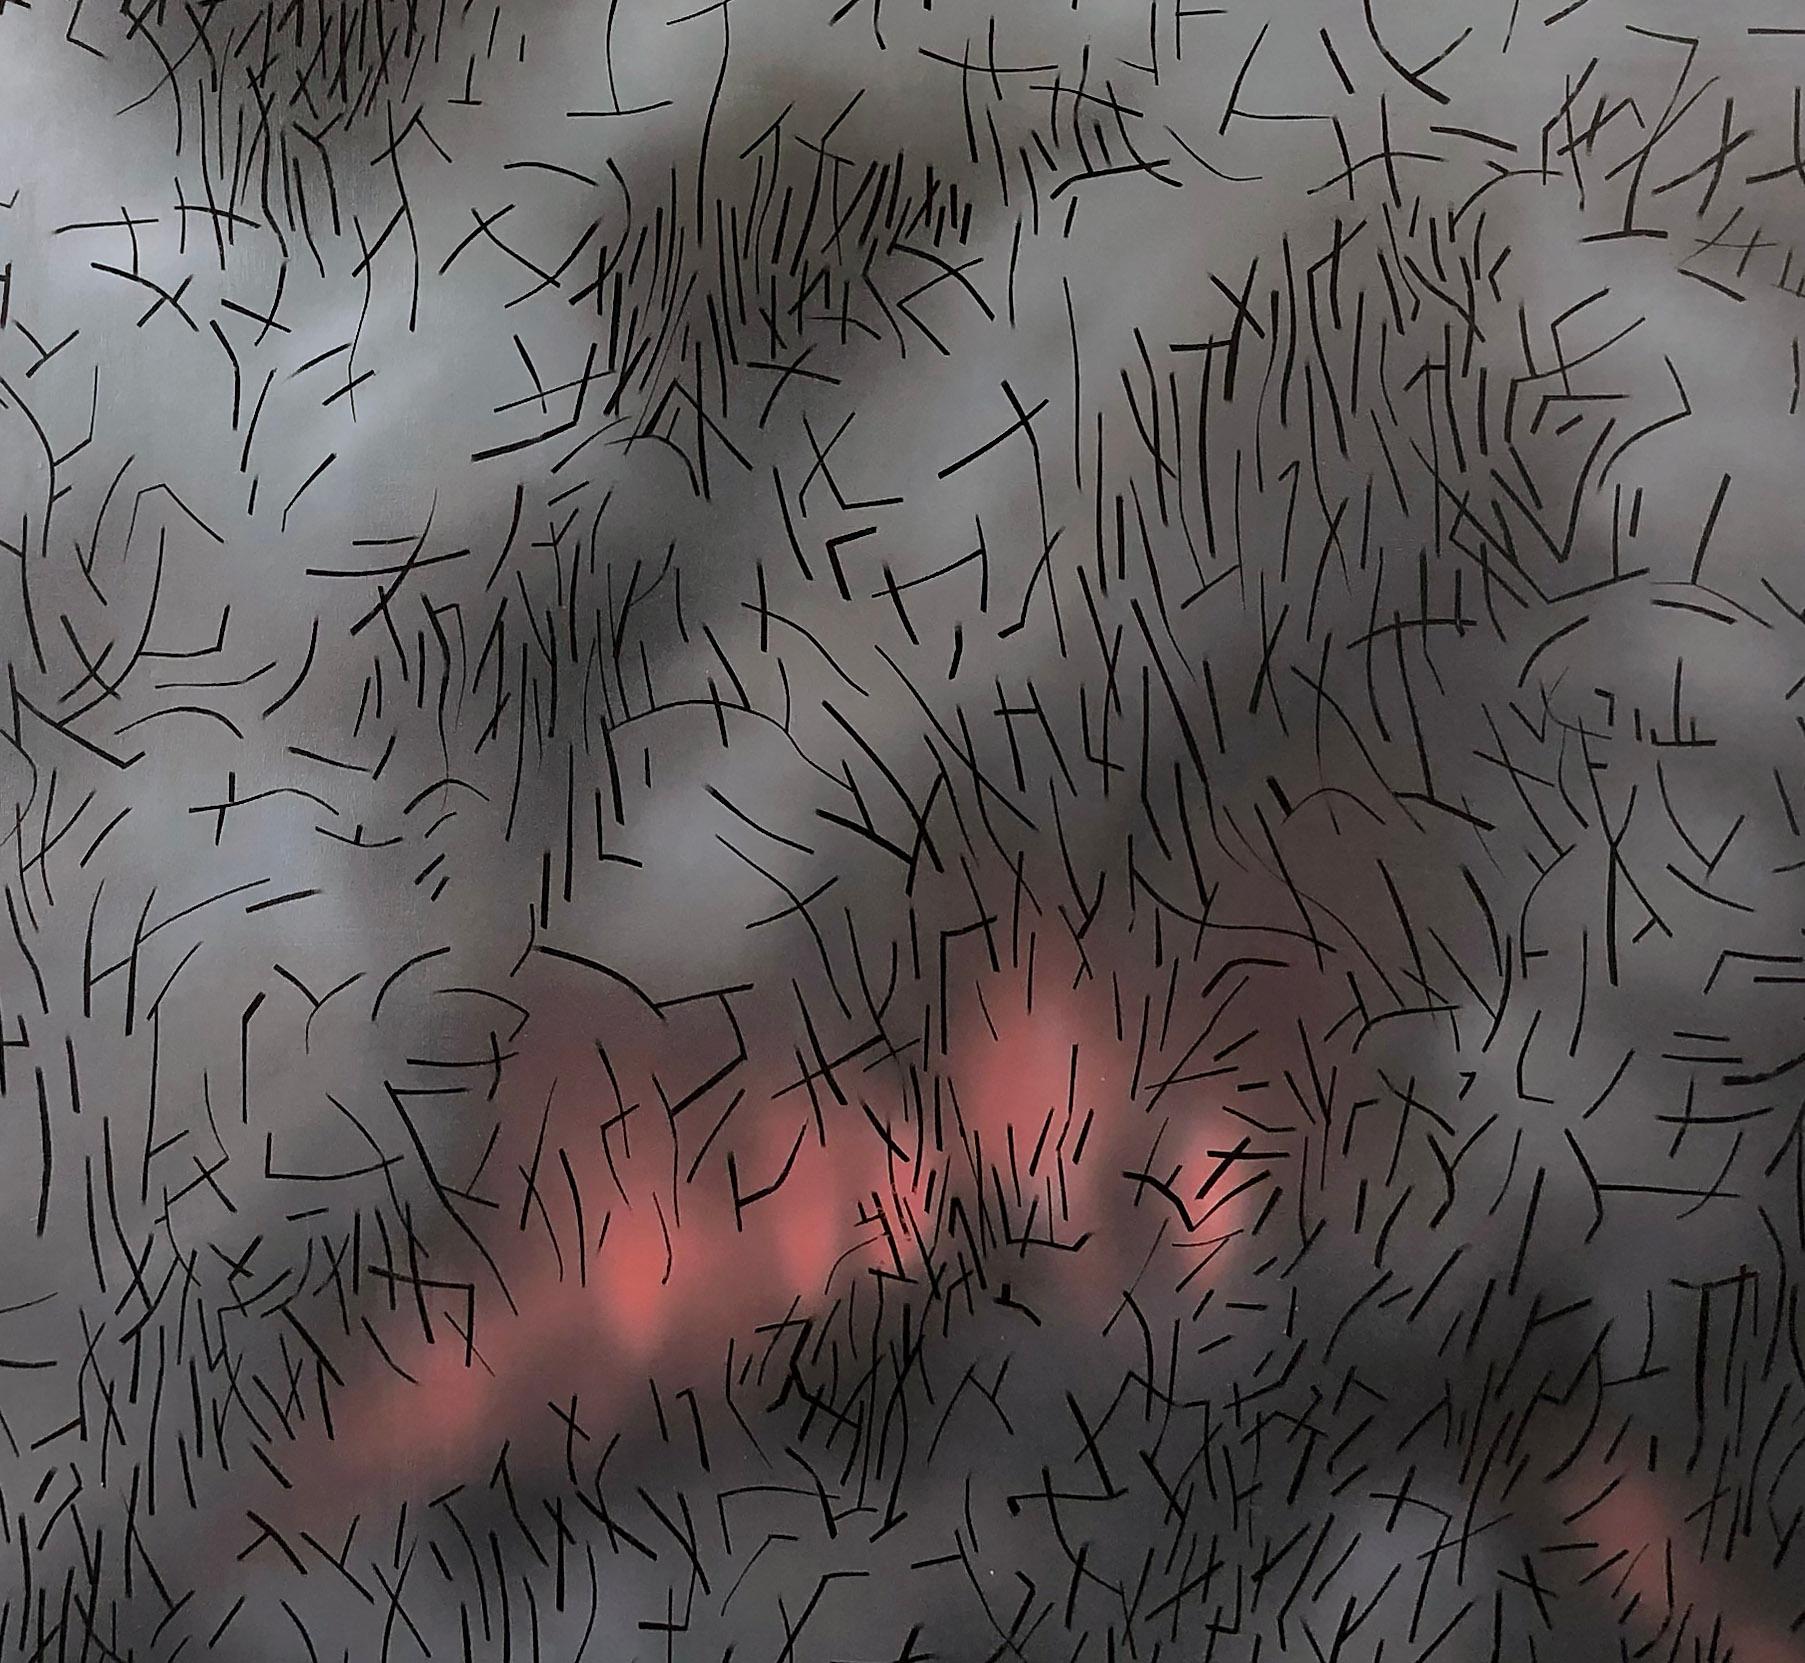 Ein fesselndes abstraktes Gemälde des zeitgenössischen amerikanischen Künstlers Kyle Butler, das Feuer und Rauchschwaden in dem für den Künstler typischen Stil darstellt.

Die Platte wird mit Graphit und dann mit Farbschichten bedeckt, die an